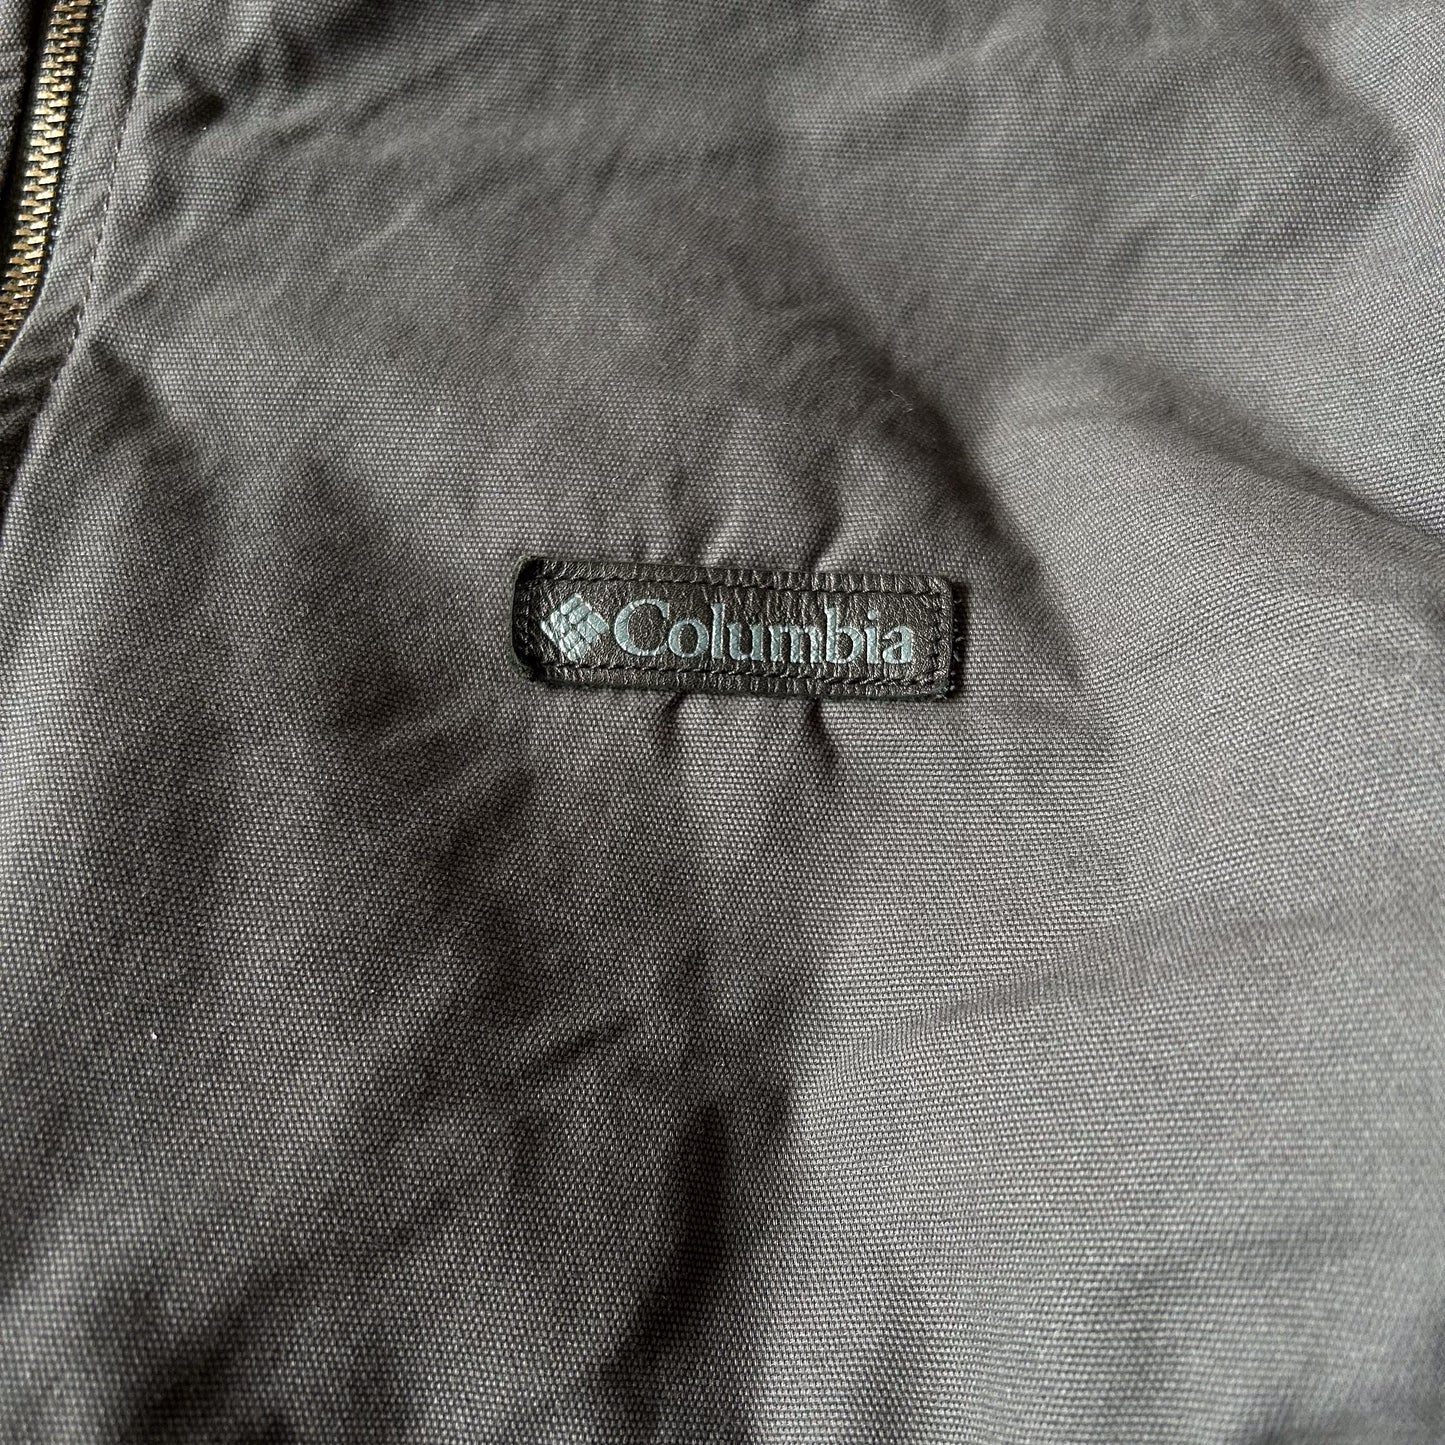 2000s -  columbia canvas fleece lined jacket